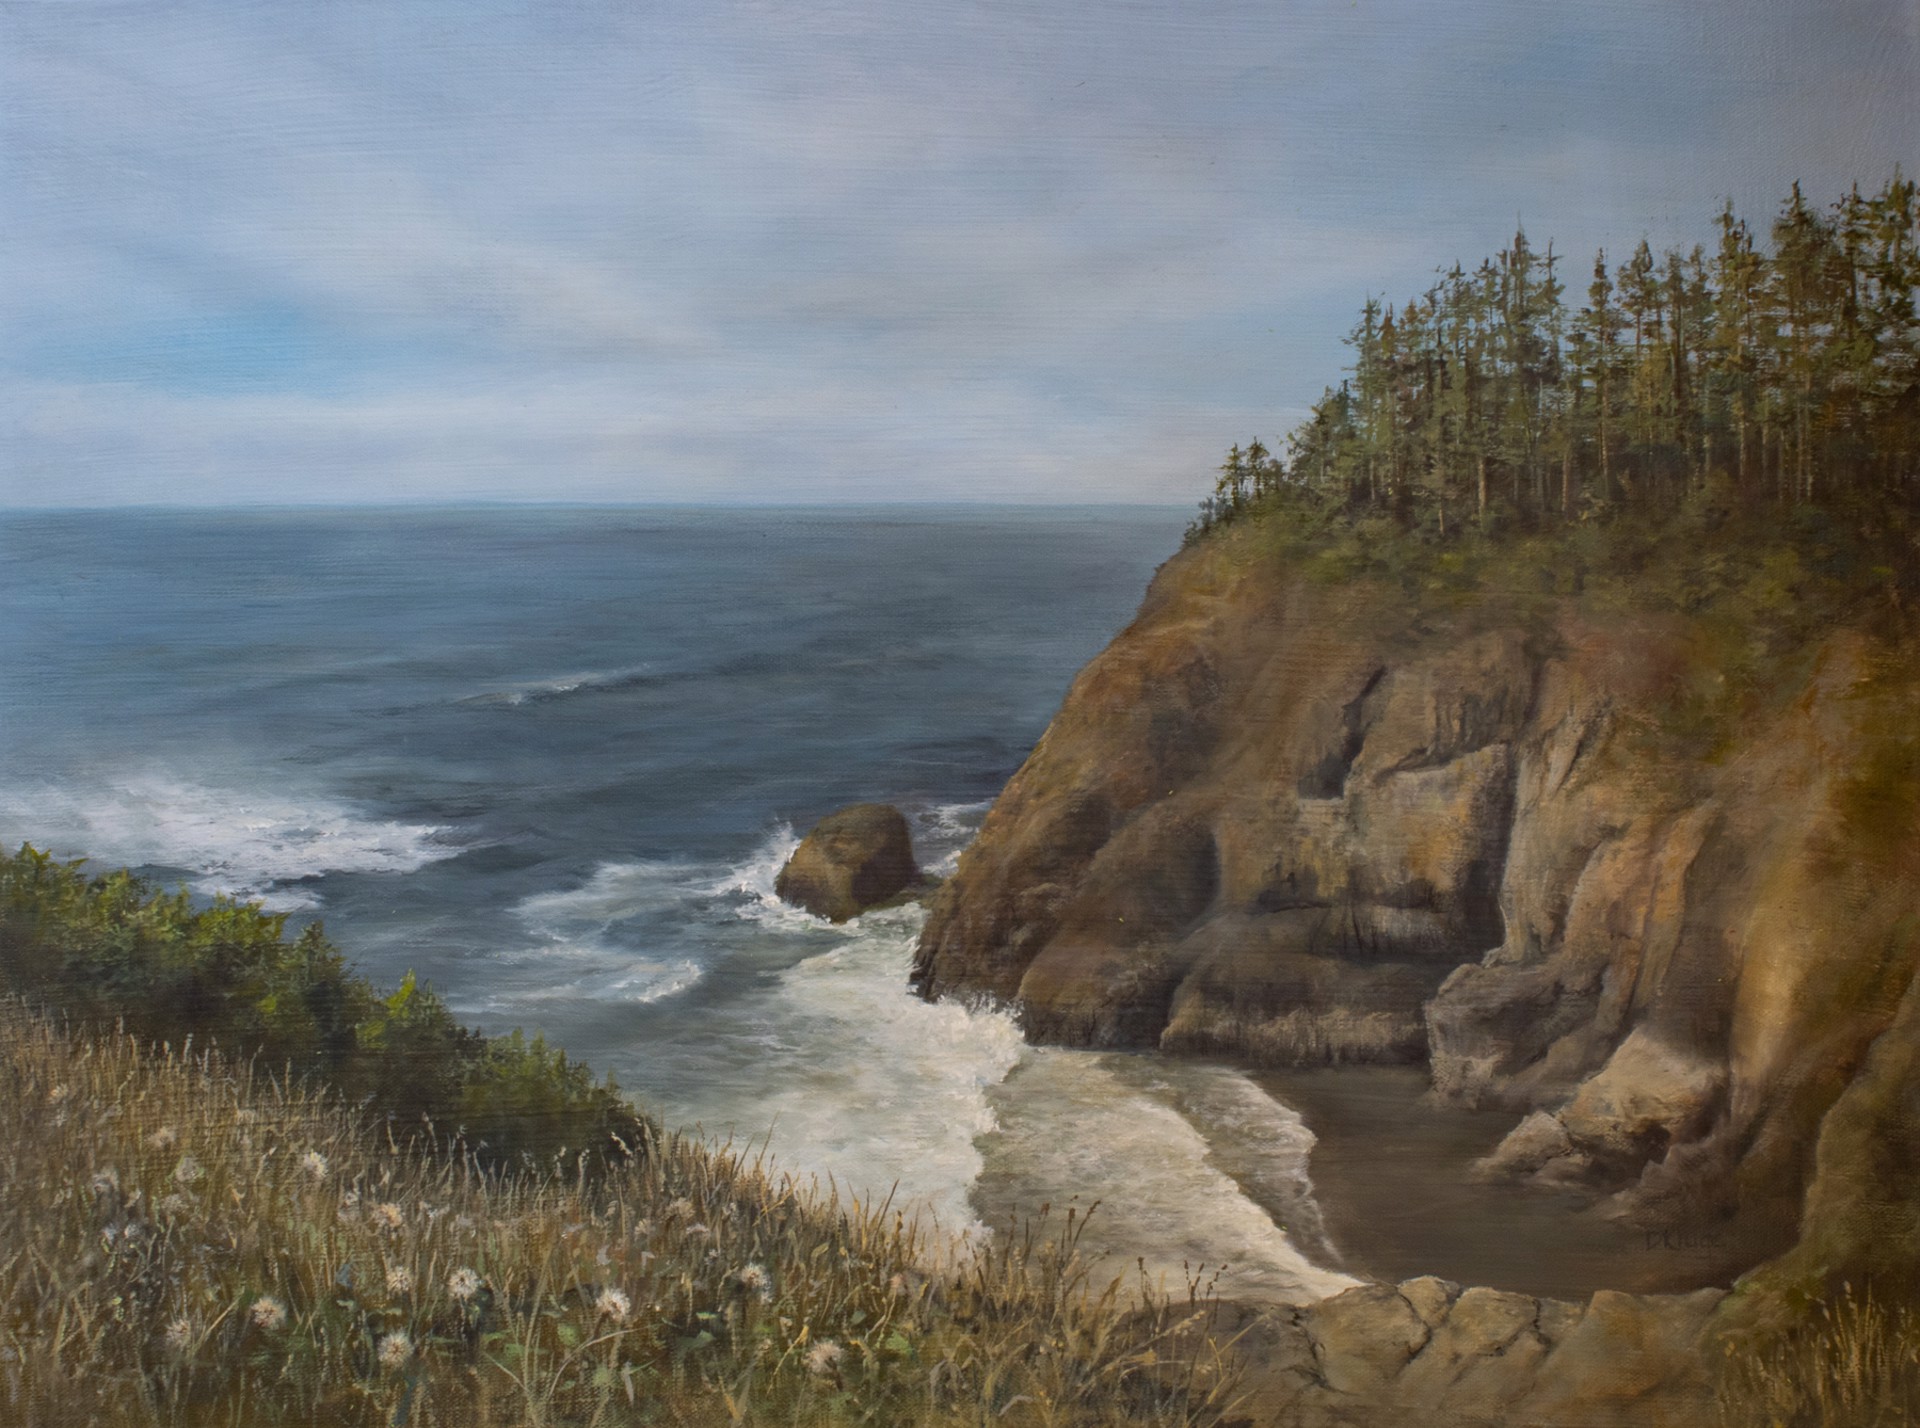 Cliffs of Long Beach by Debbie Kluge